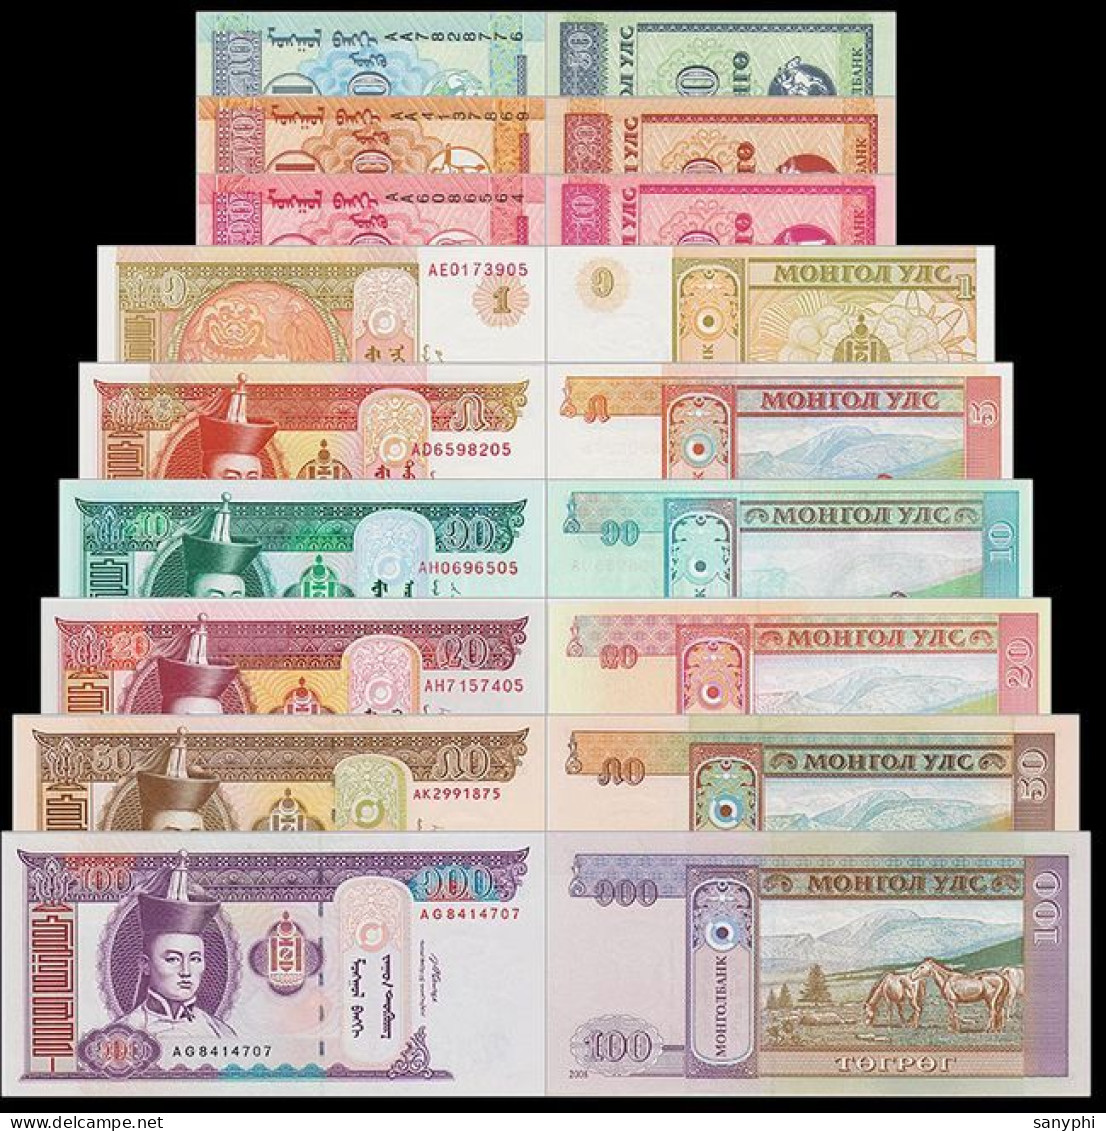 Mongolia Bank 2014 10 Banknotes 10-100T - Mongolia